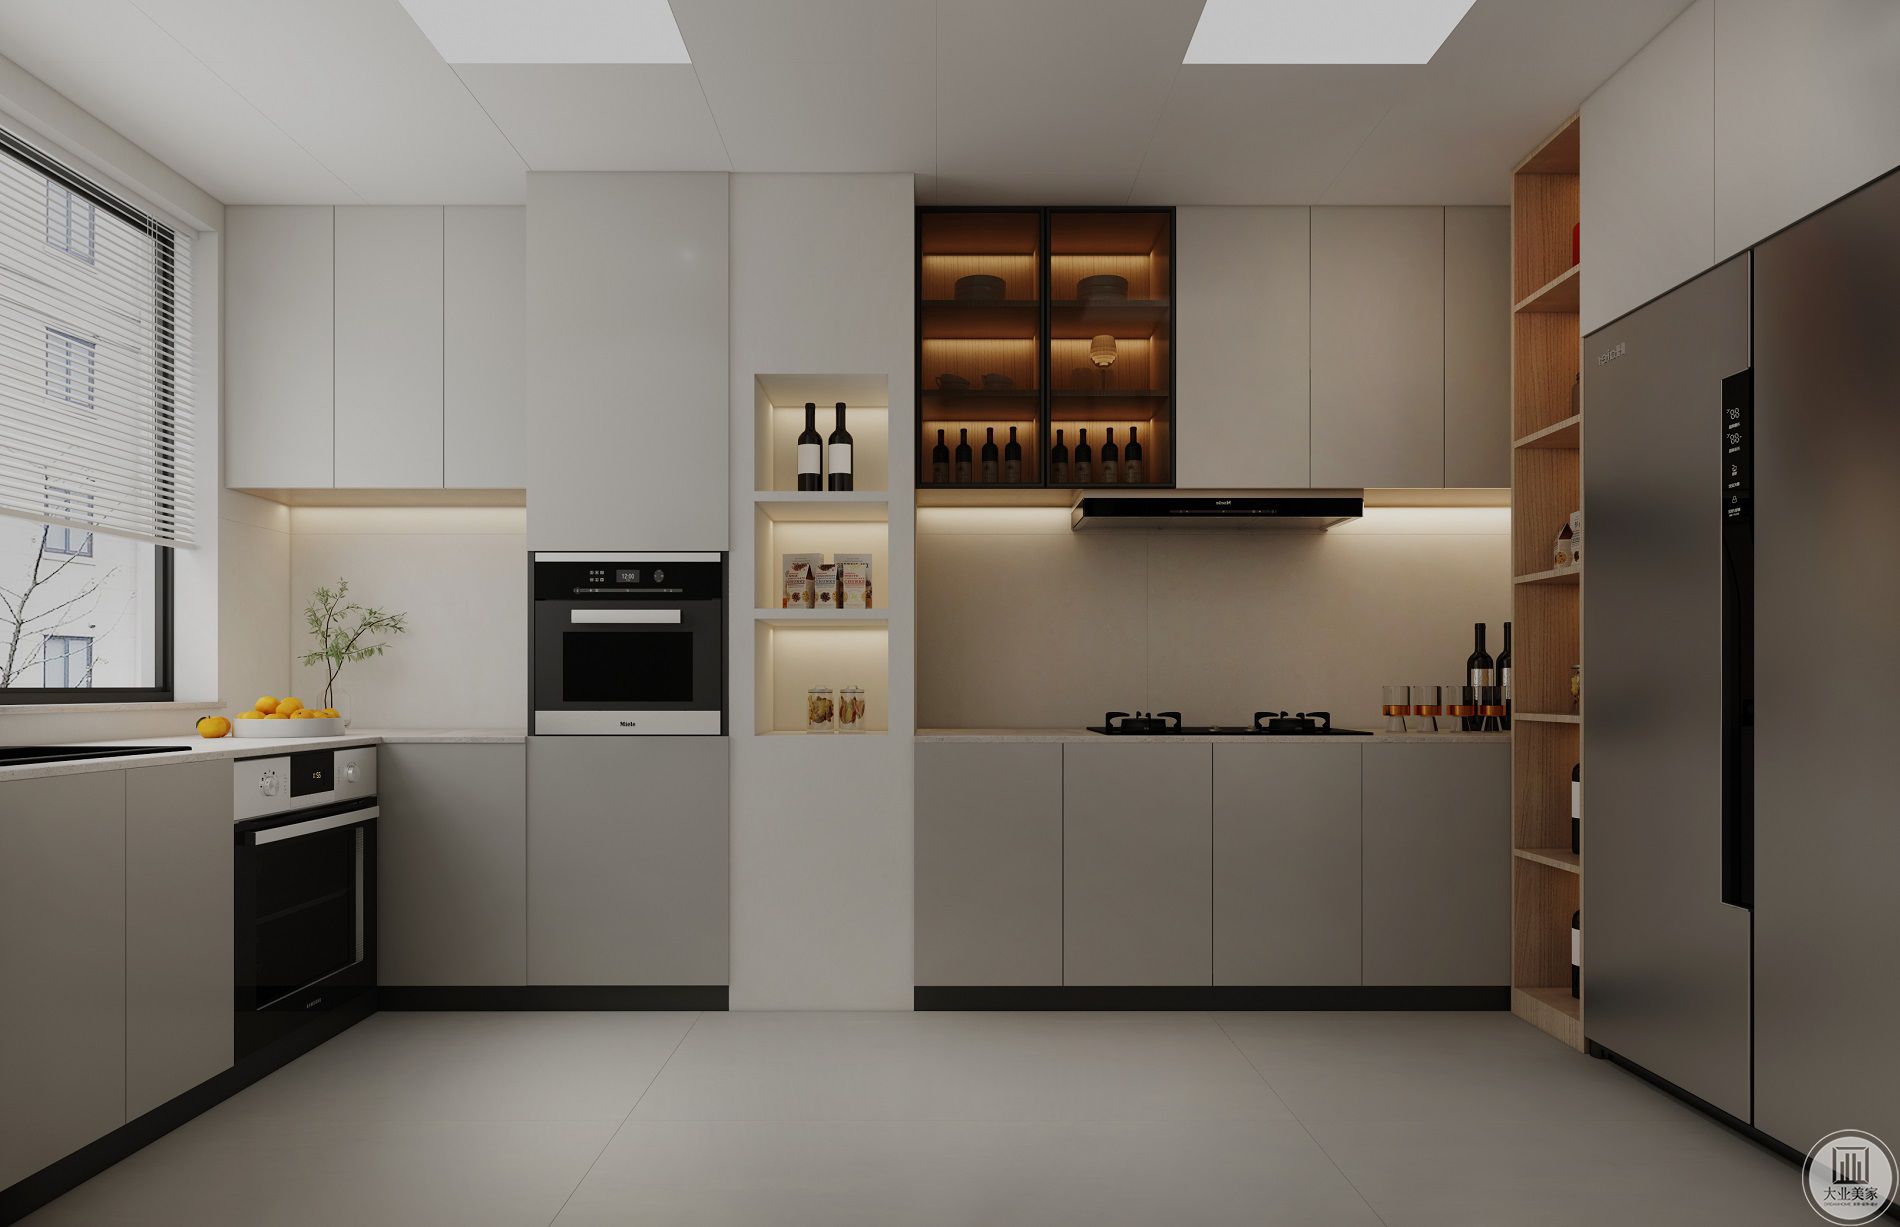 厨房结合建筑结构做壁龛增加收纳空间，电器做内嵌处理增加对空间的使用率.jpg